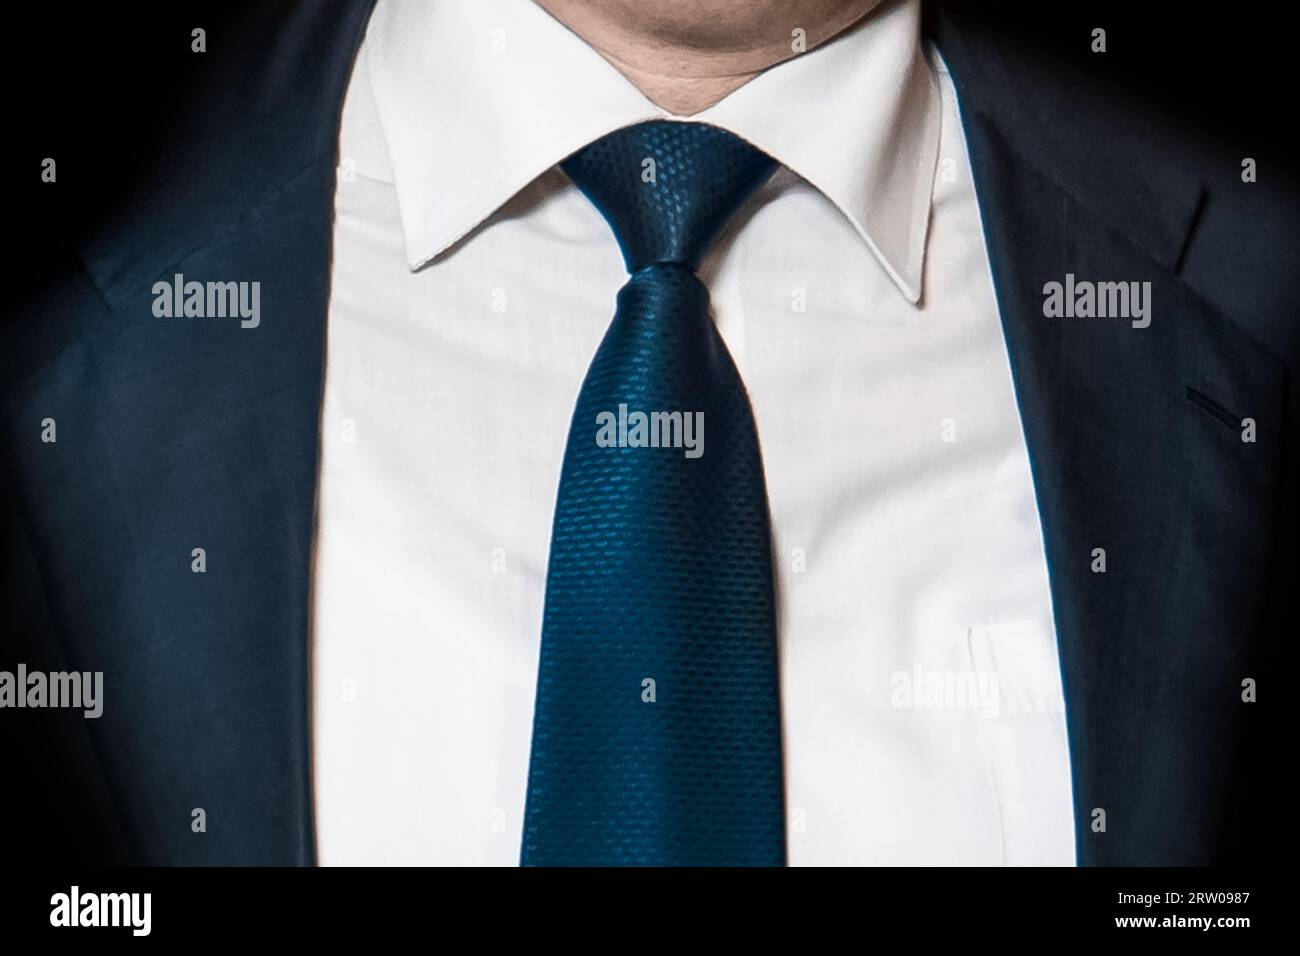 Herren Business-Mode Mode weißes Hemd und blaue Krawatte und Anzug Jacke Nahaufnahme weiche Fokus. Stockfoto